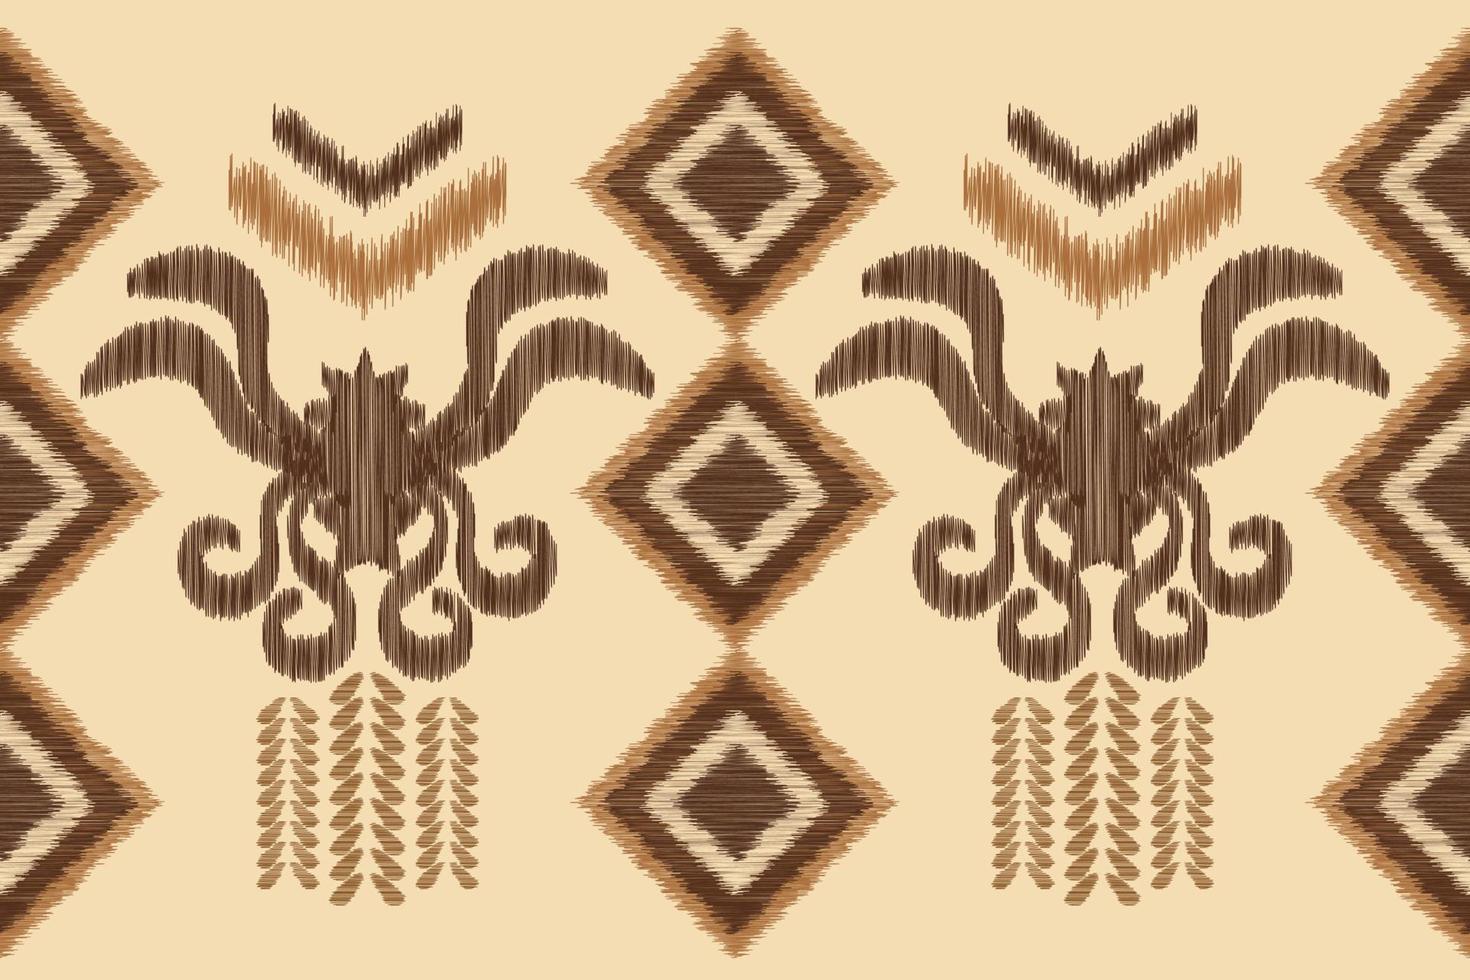 étnico ikat tela modelo geométrico estilo.africano ikat bordado étnico oriental modelo marrón crema antecedentes. resumen,vector,ilustración.para textura,ropa,envoltura,decoración,alfombra. vector